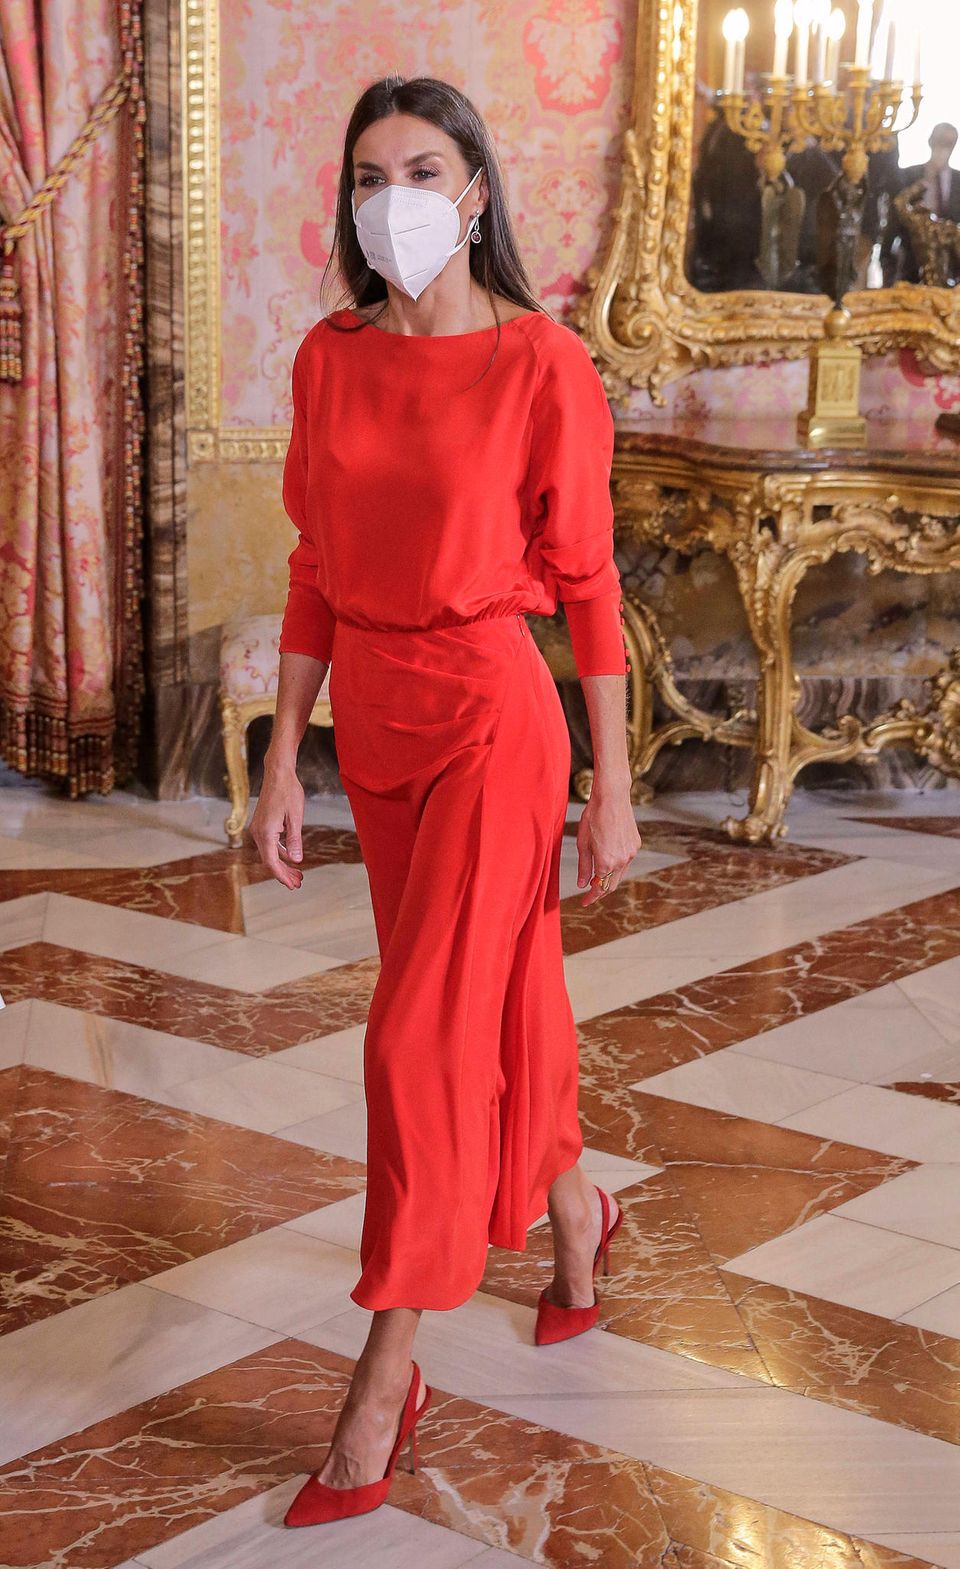 Königin Letizia trägt ein rotes Outfit